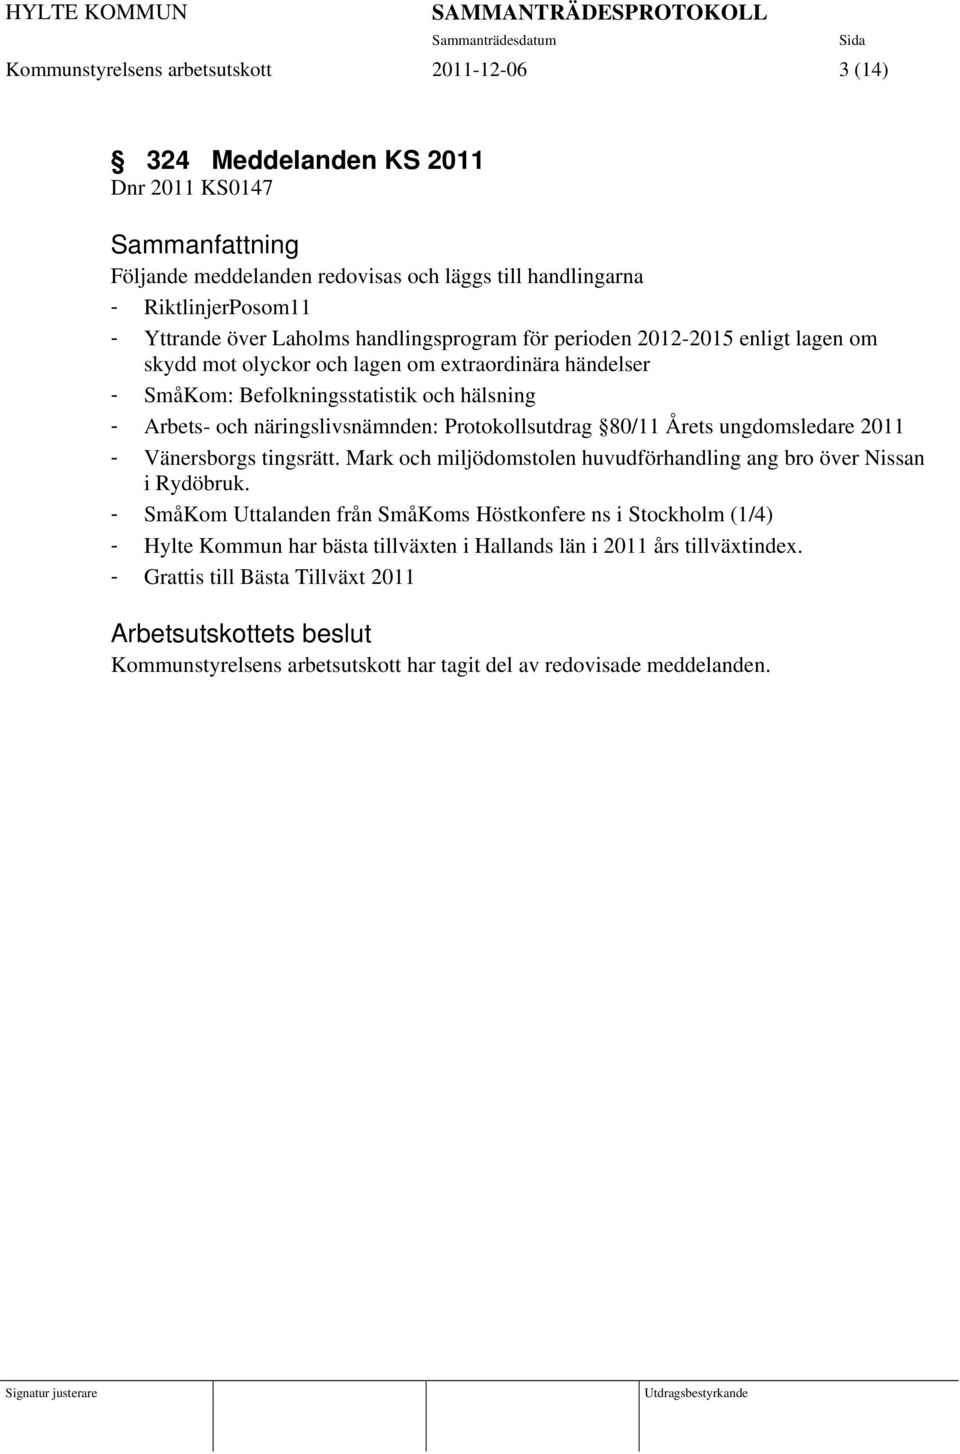 Protokollsutdrag 80/11 Årets ungdomsledare 2011 - Vänersborgs tingsrätt. Mark och miljödomstolen huvudförhandling ang bro över Nissan i Rydöbruk.